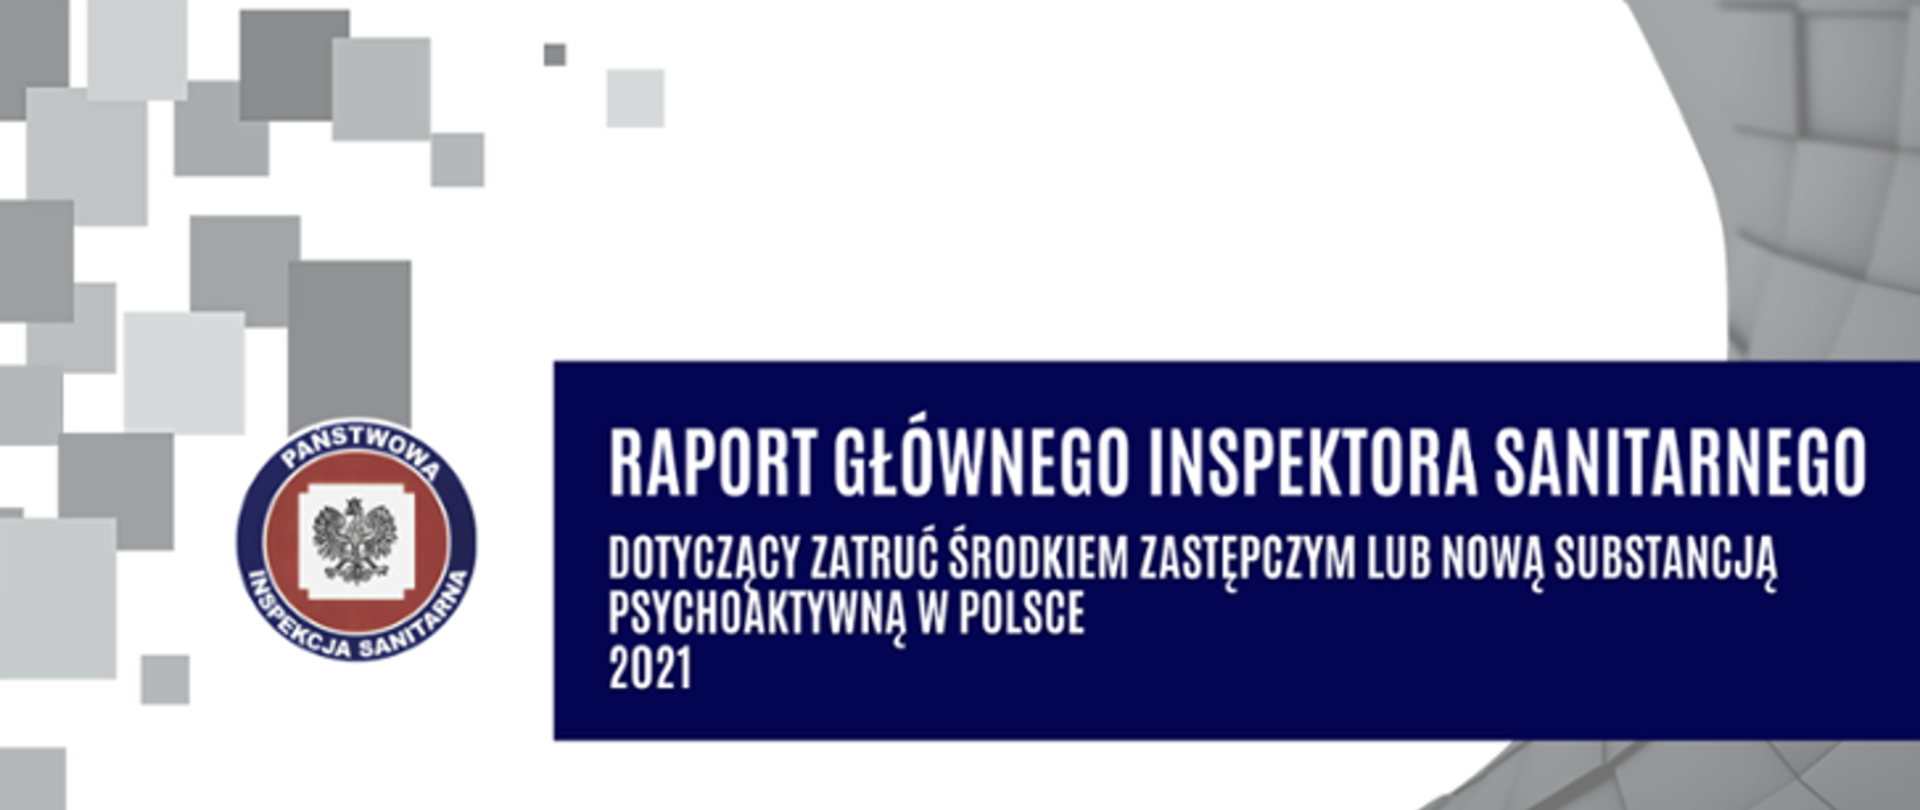 Raport Głównego Inspektora Sanitarnego dotyczący zatruć środkiem zastępczym lub nową substancją psychoaktywną w Polsce za 2021 rok